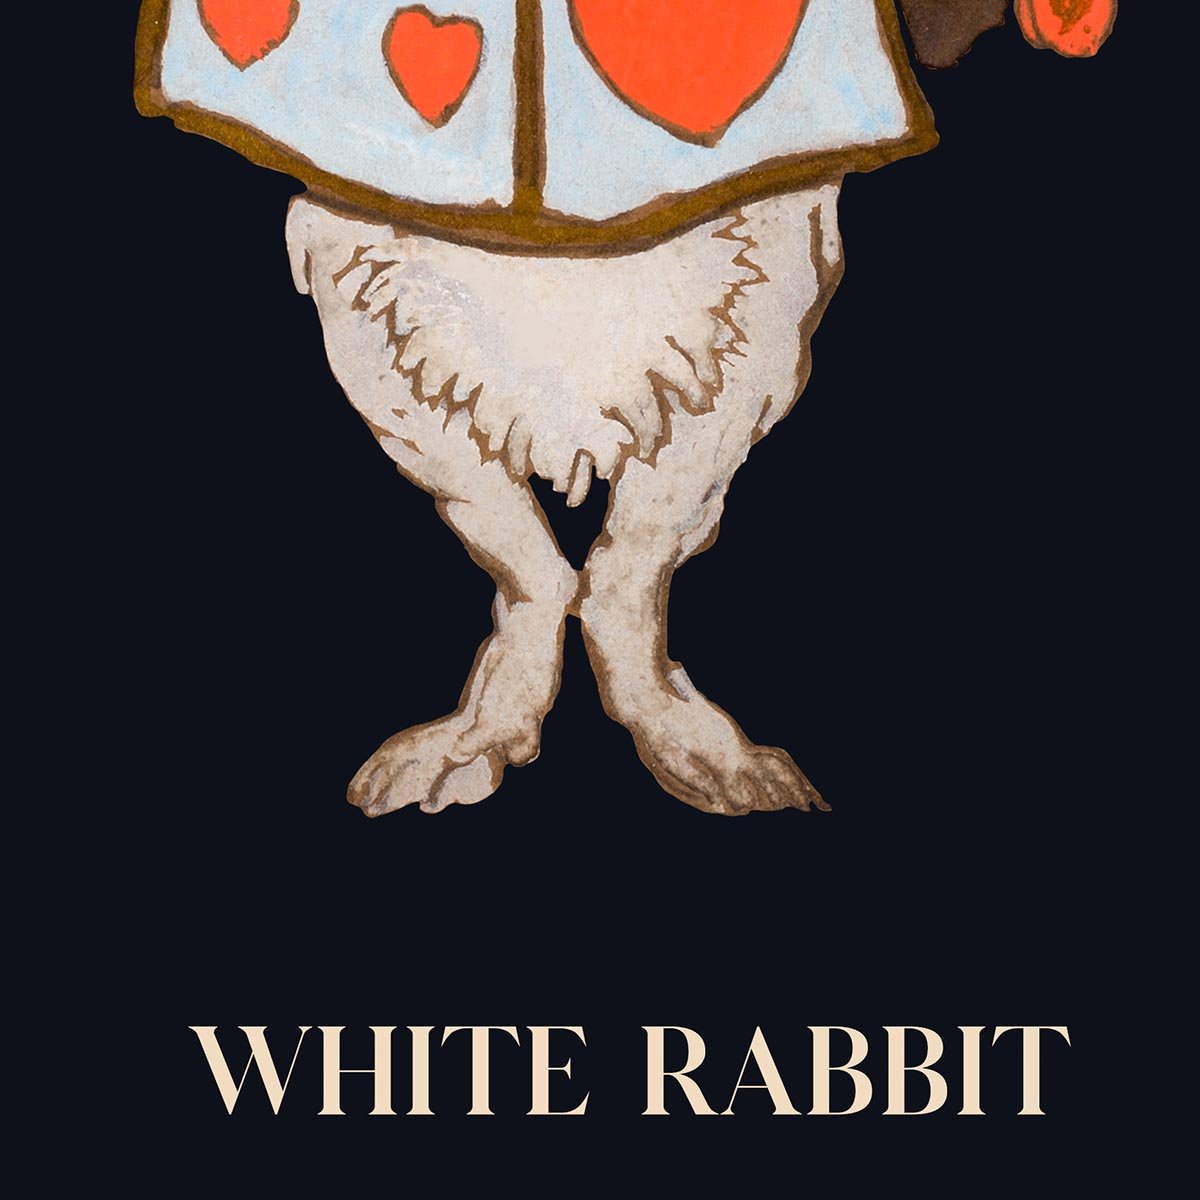 White Rabbit from Alice in Wonderland